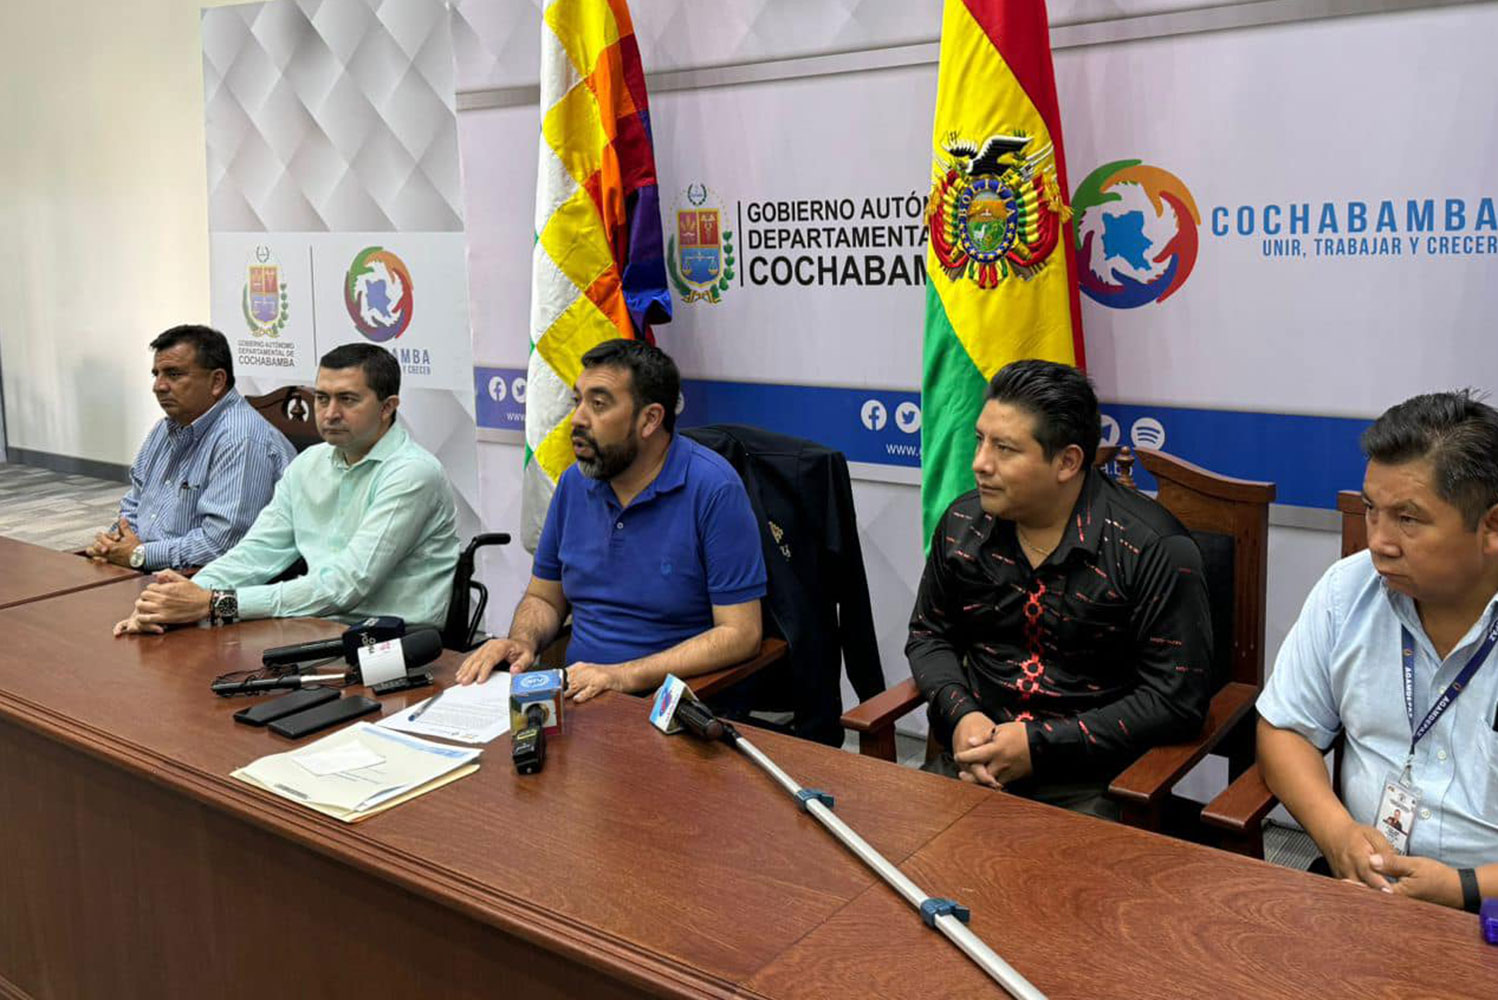 Gobernadores de Pando y La Paz establecen mesas de trabajo para definir límites territoriales